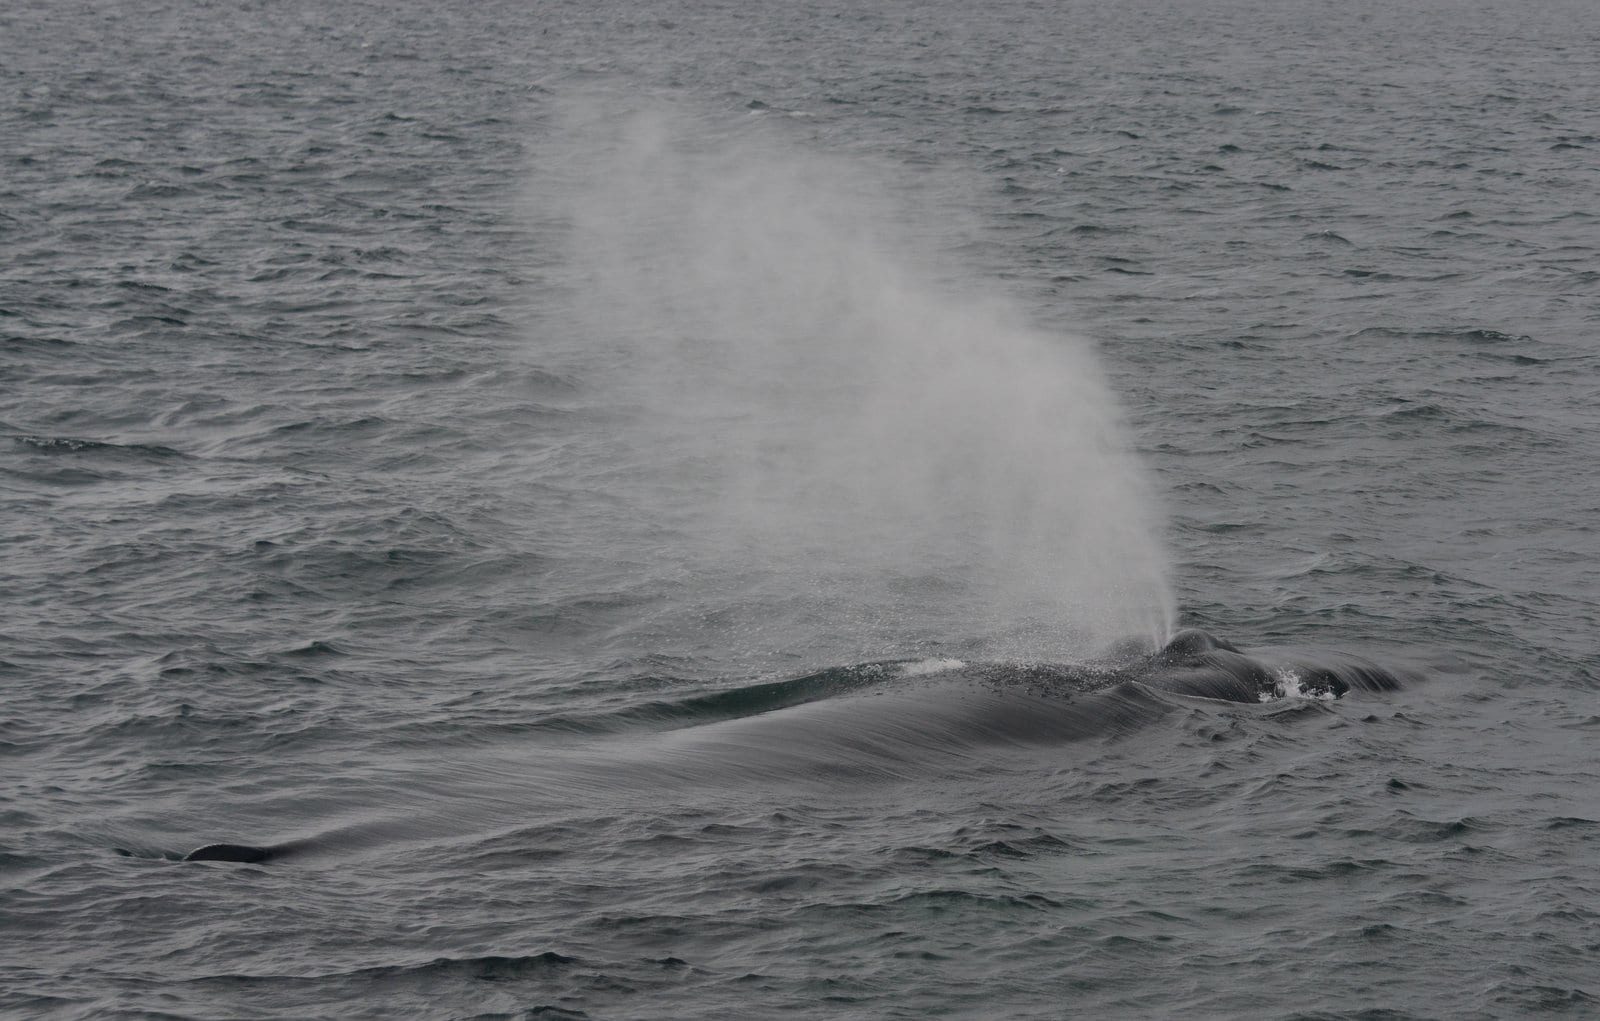 blow of a humpback